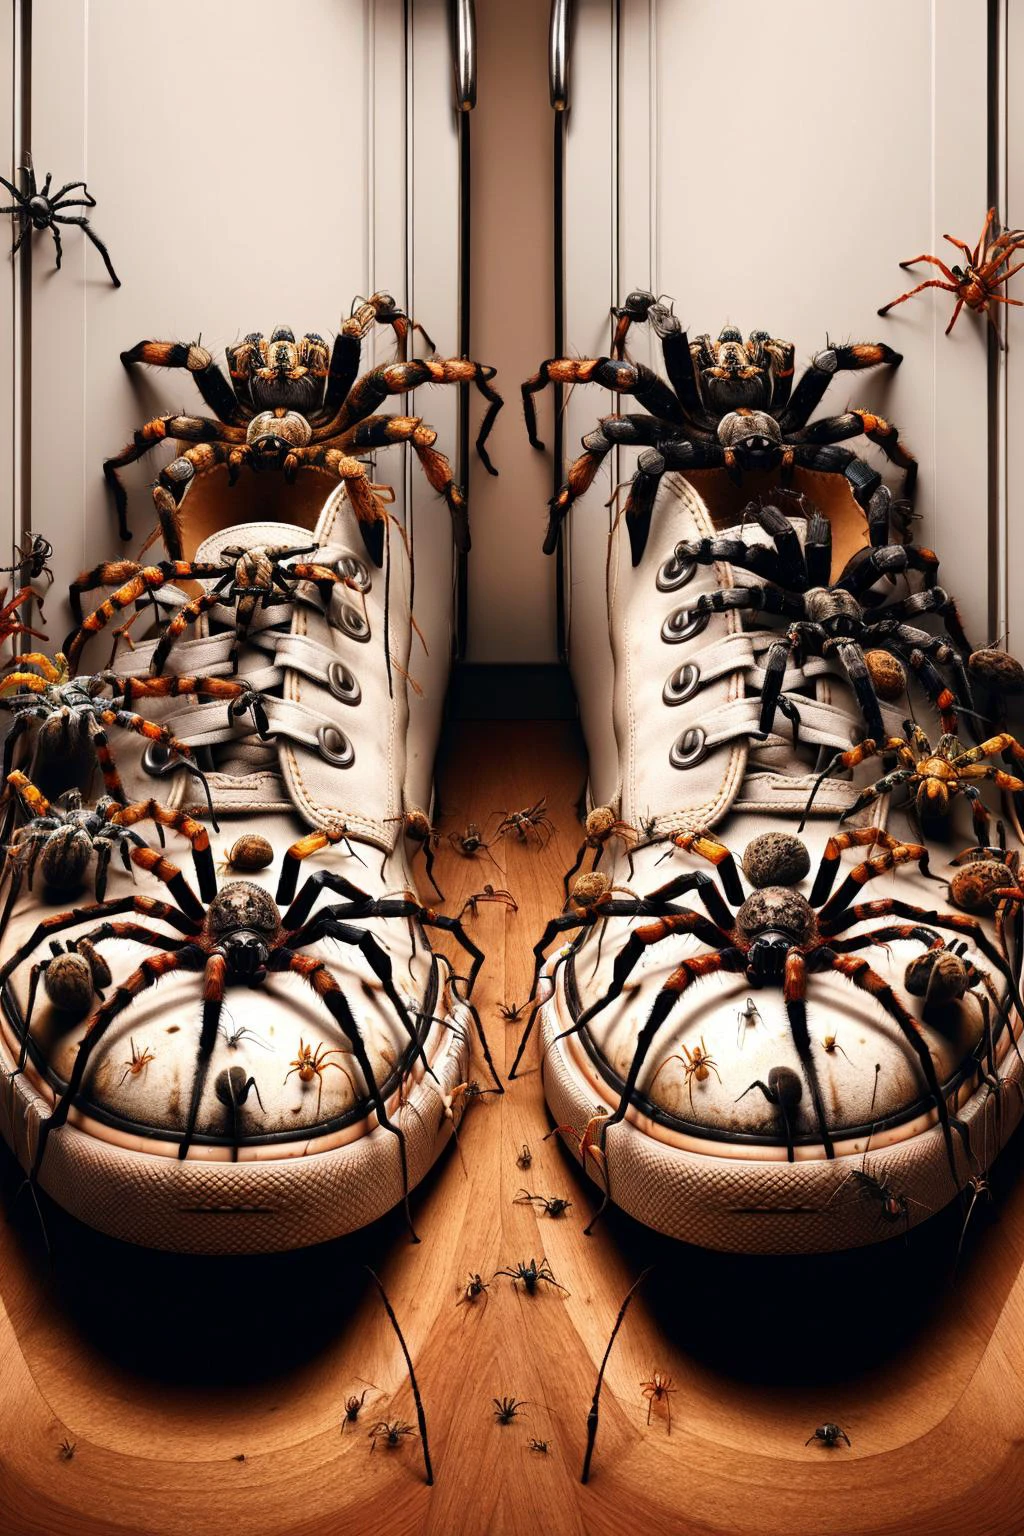 Ais-spiderz on a pair of shoes, in einem unordentlichen Schrank 